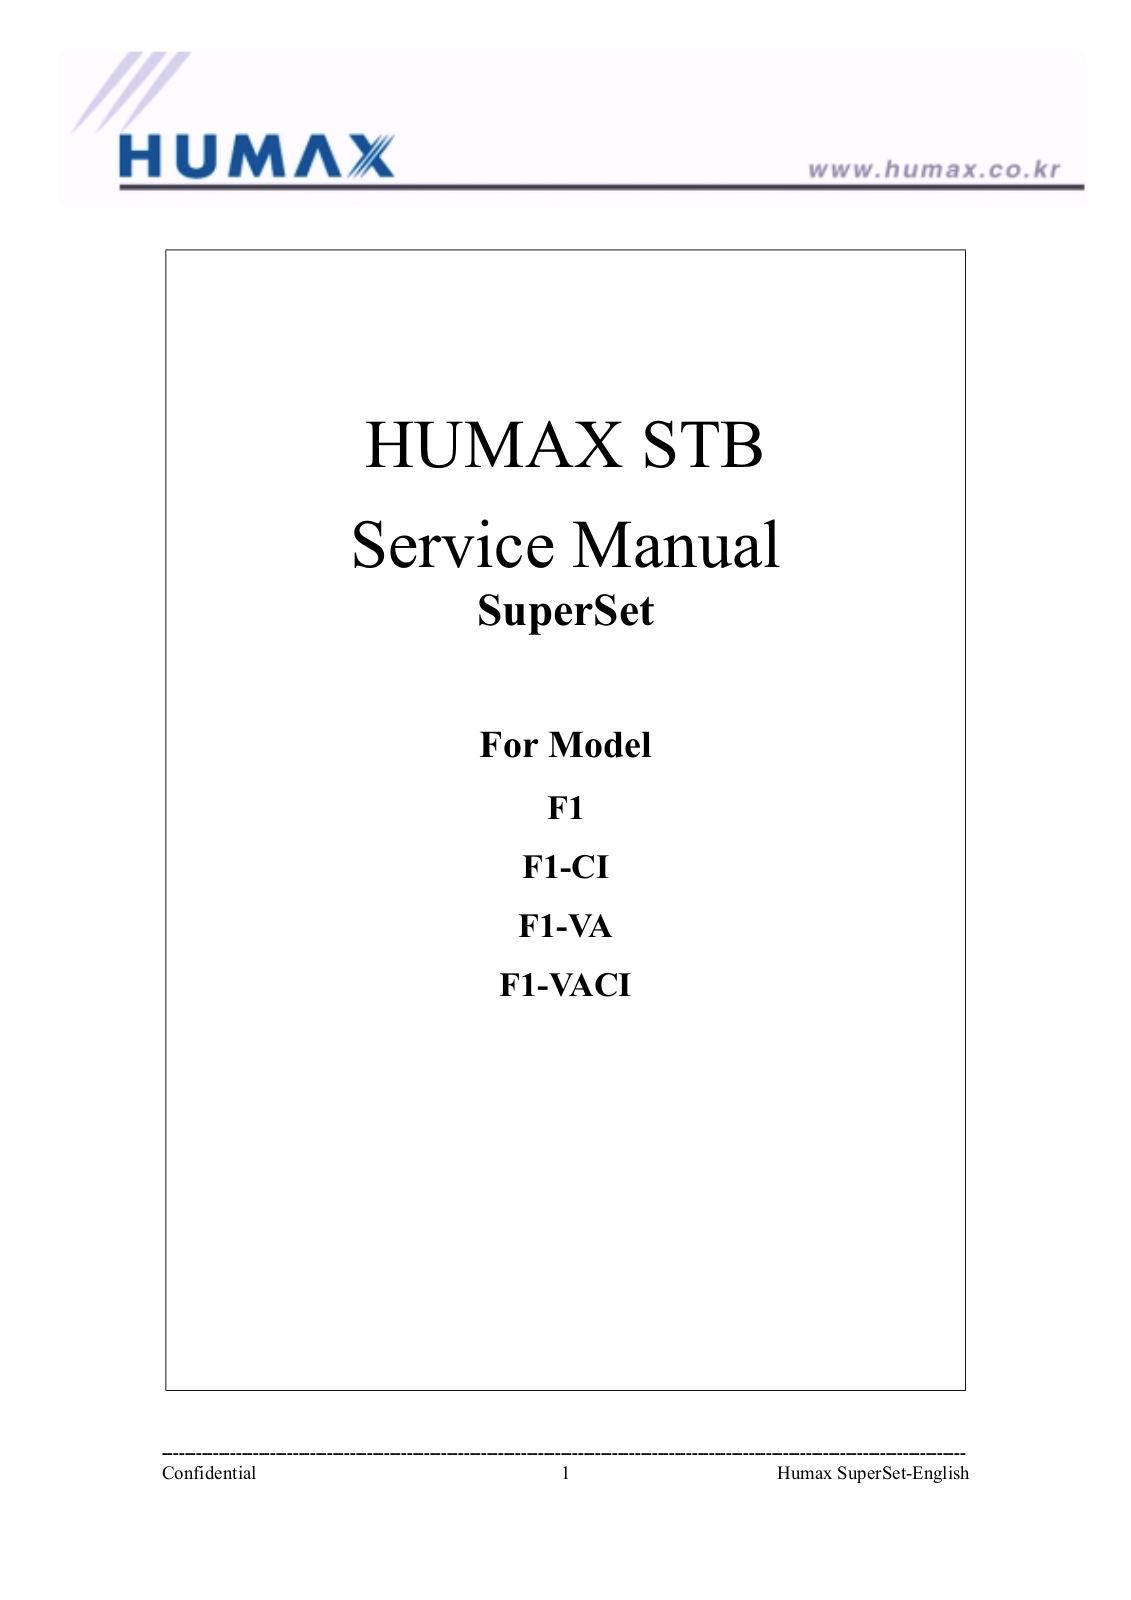 HUMAX F 1 Service Manual